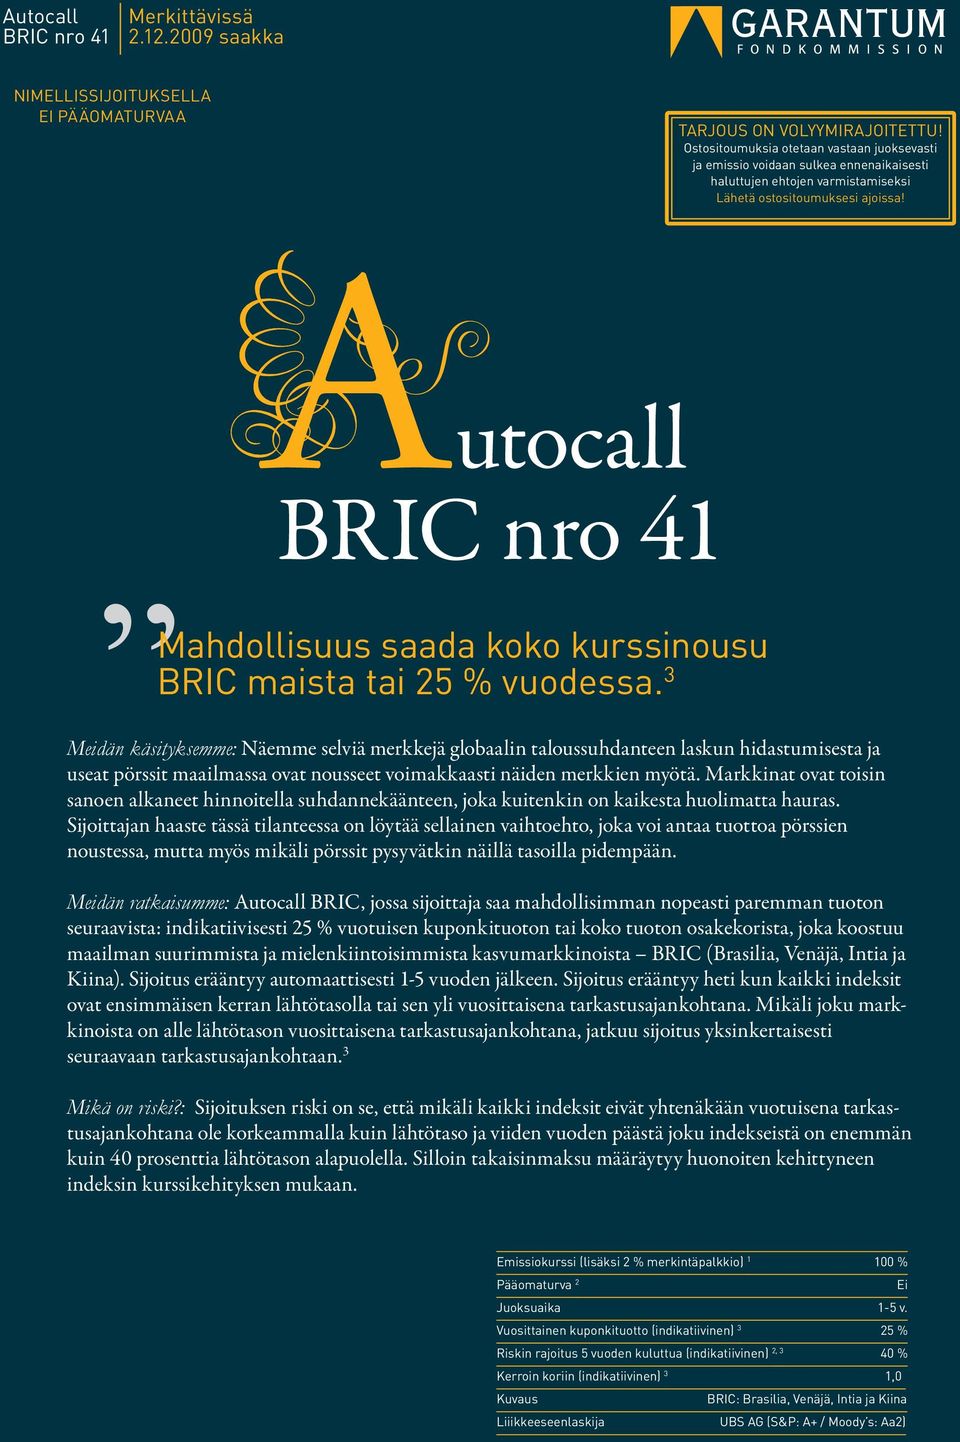 utocall BRIC nro 41 Mahdollisuus saada koko kurssinousu BRIC maista tai 25 % vuodessa.